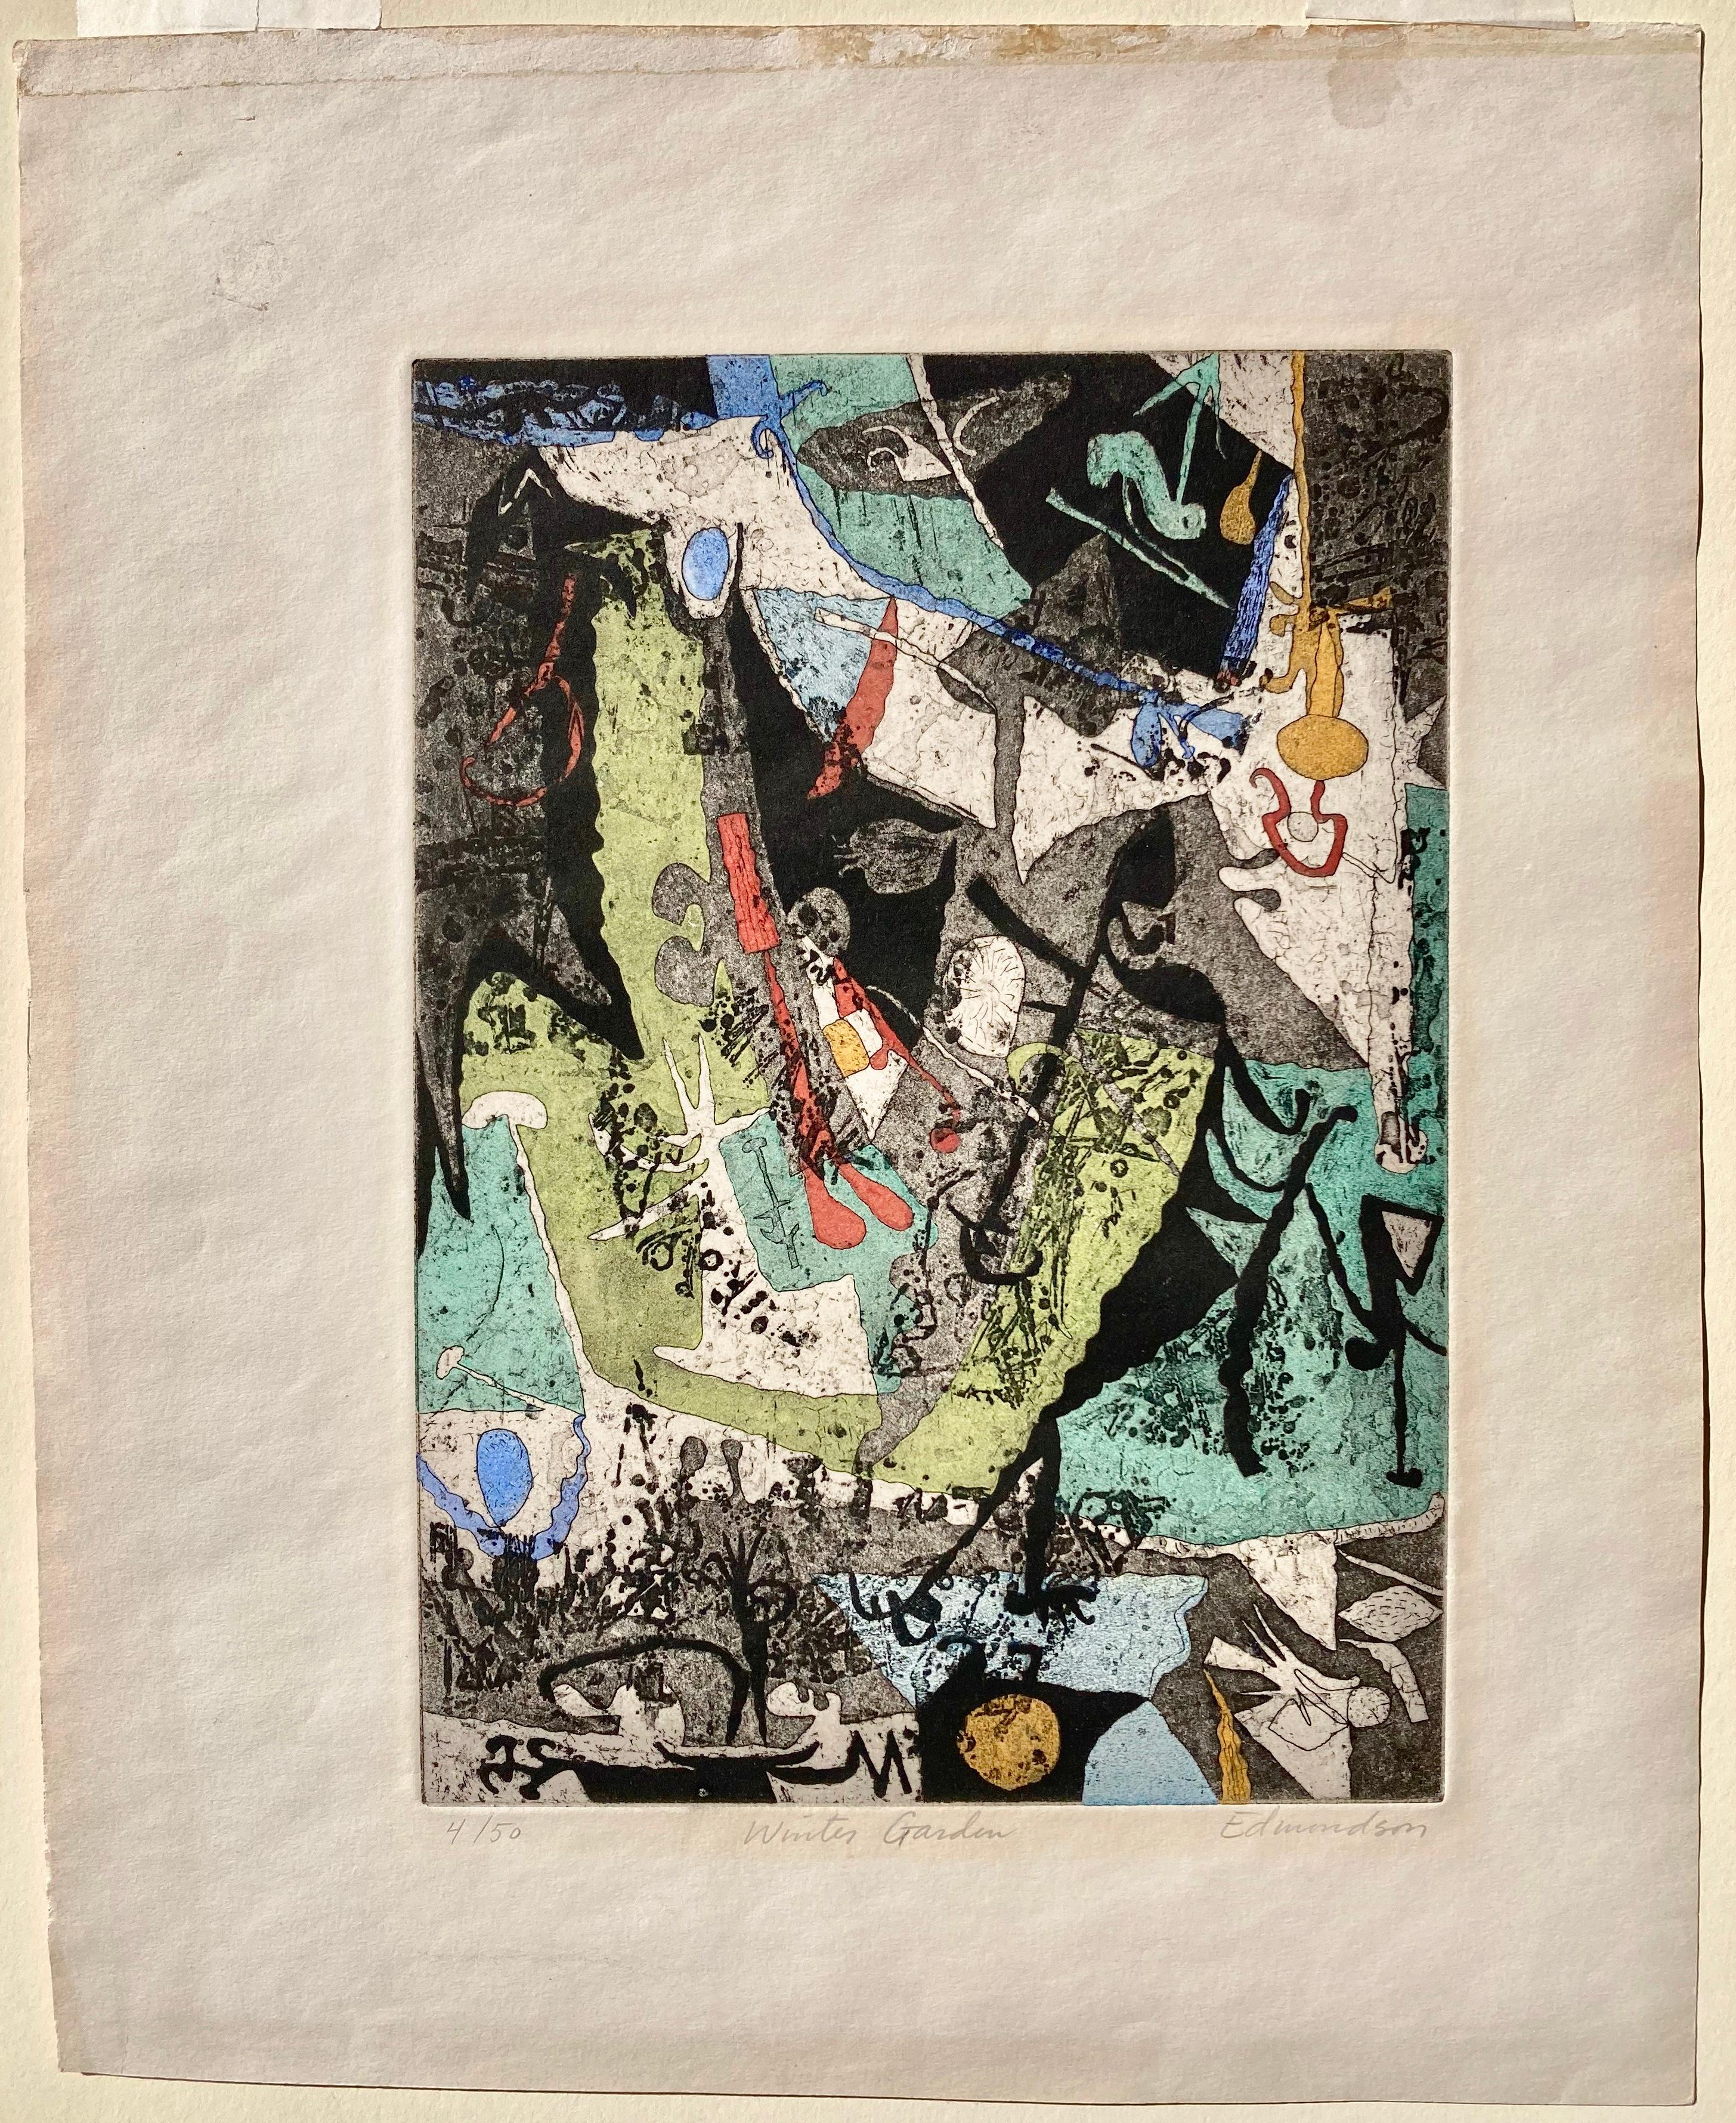 LEONARD EDMONDSON (1906 - 2001)

JARDIN D'HIVER, 1957
Taille-douce en couleur, Edition 50. Signé, titré et n° au crayon. Image 11 x 8 ¾